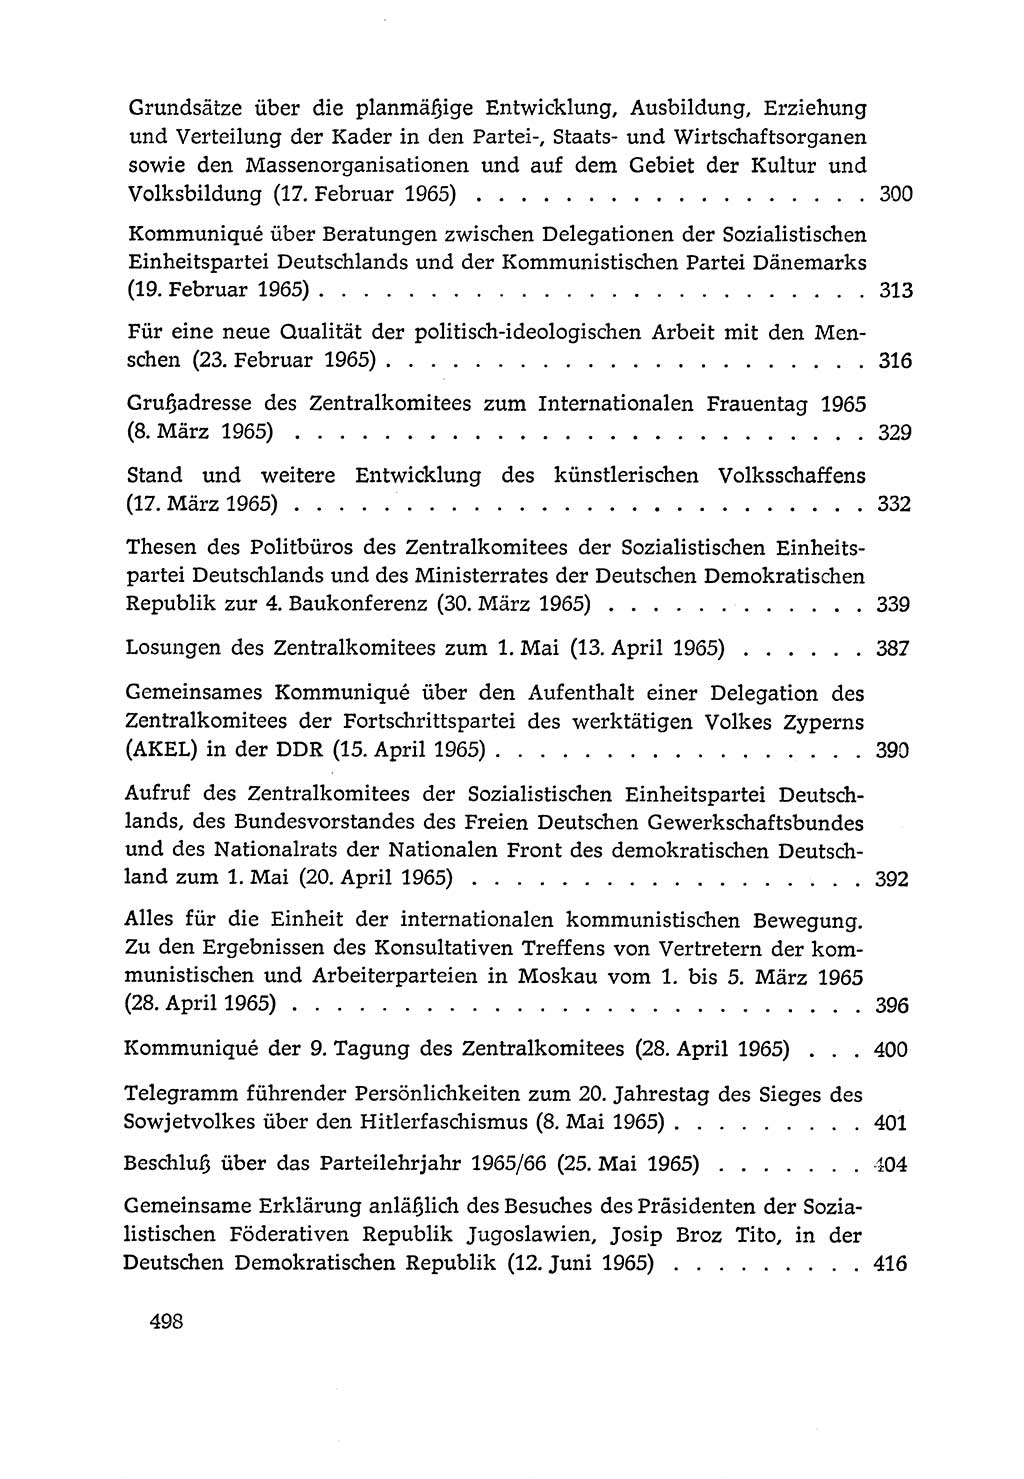 Dokumente der Sozialistischen Einheitspartei Deutschlands (SED) [Deutsche Demokratische Republik (DDR)] 1964-1965, Seite 498 (Dok. SED DDR 1964-1965, S. 498)